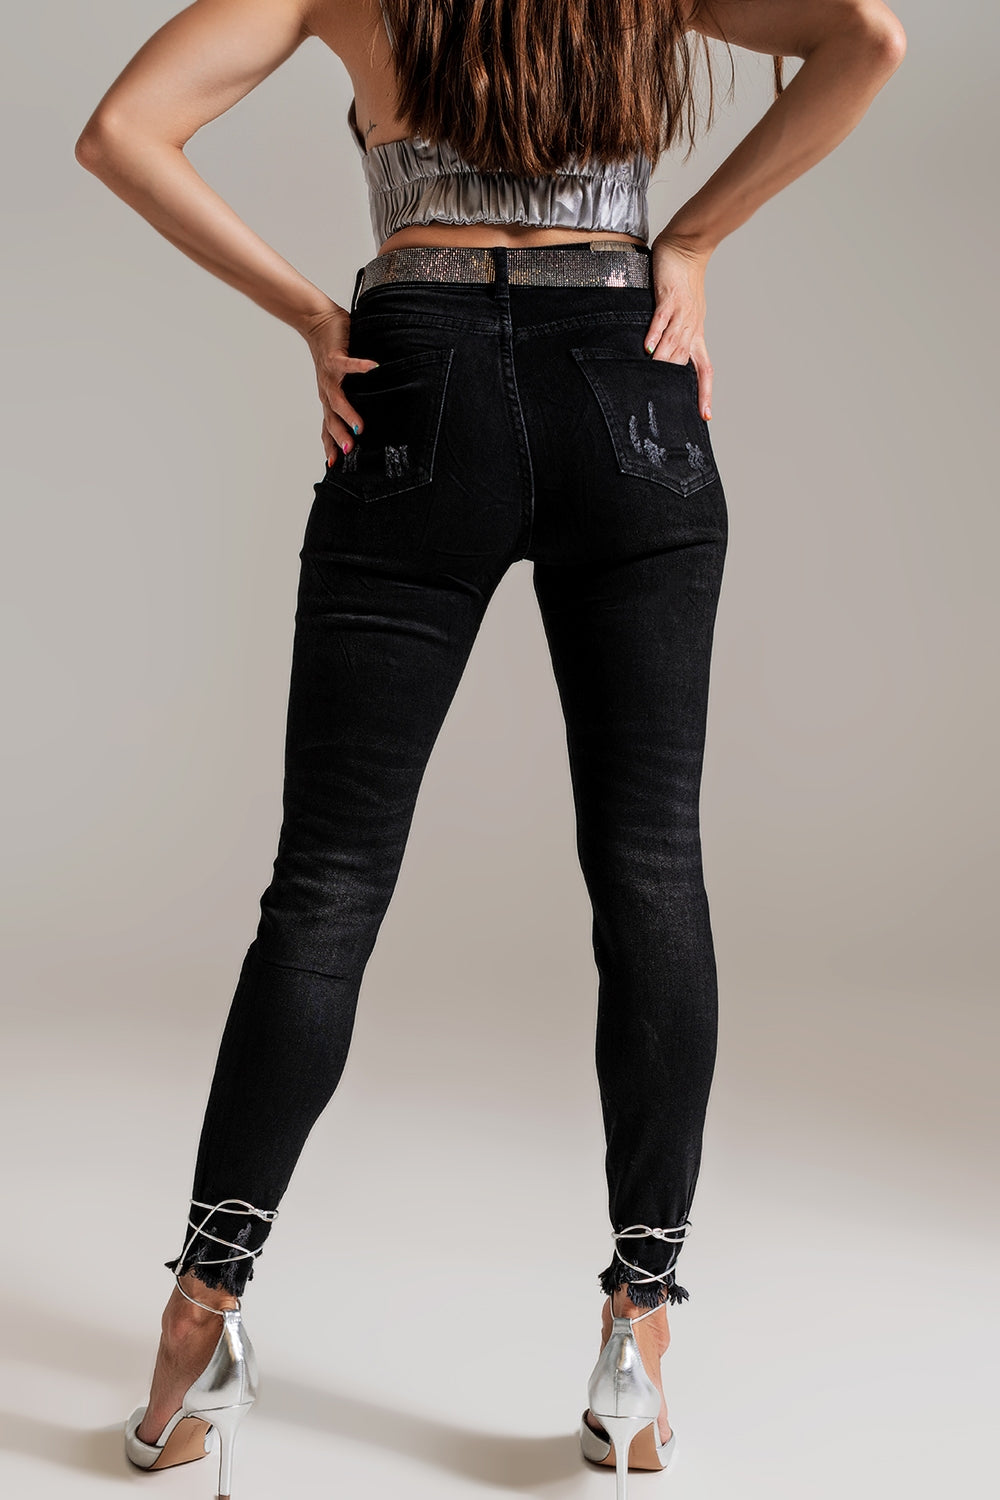 TEEK - Black Wash Embellished Skinny Jeans JEANS TEEK M   